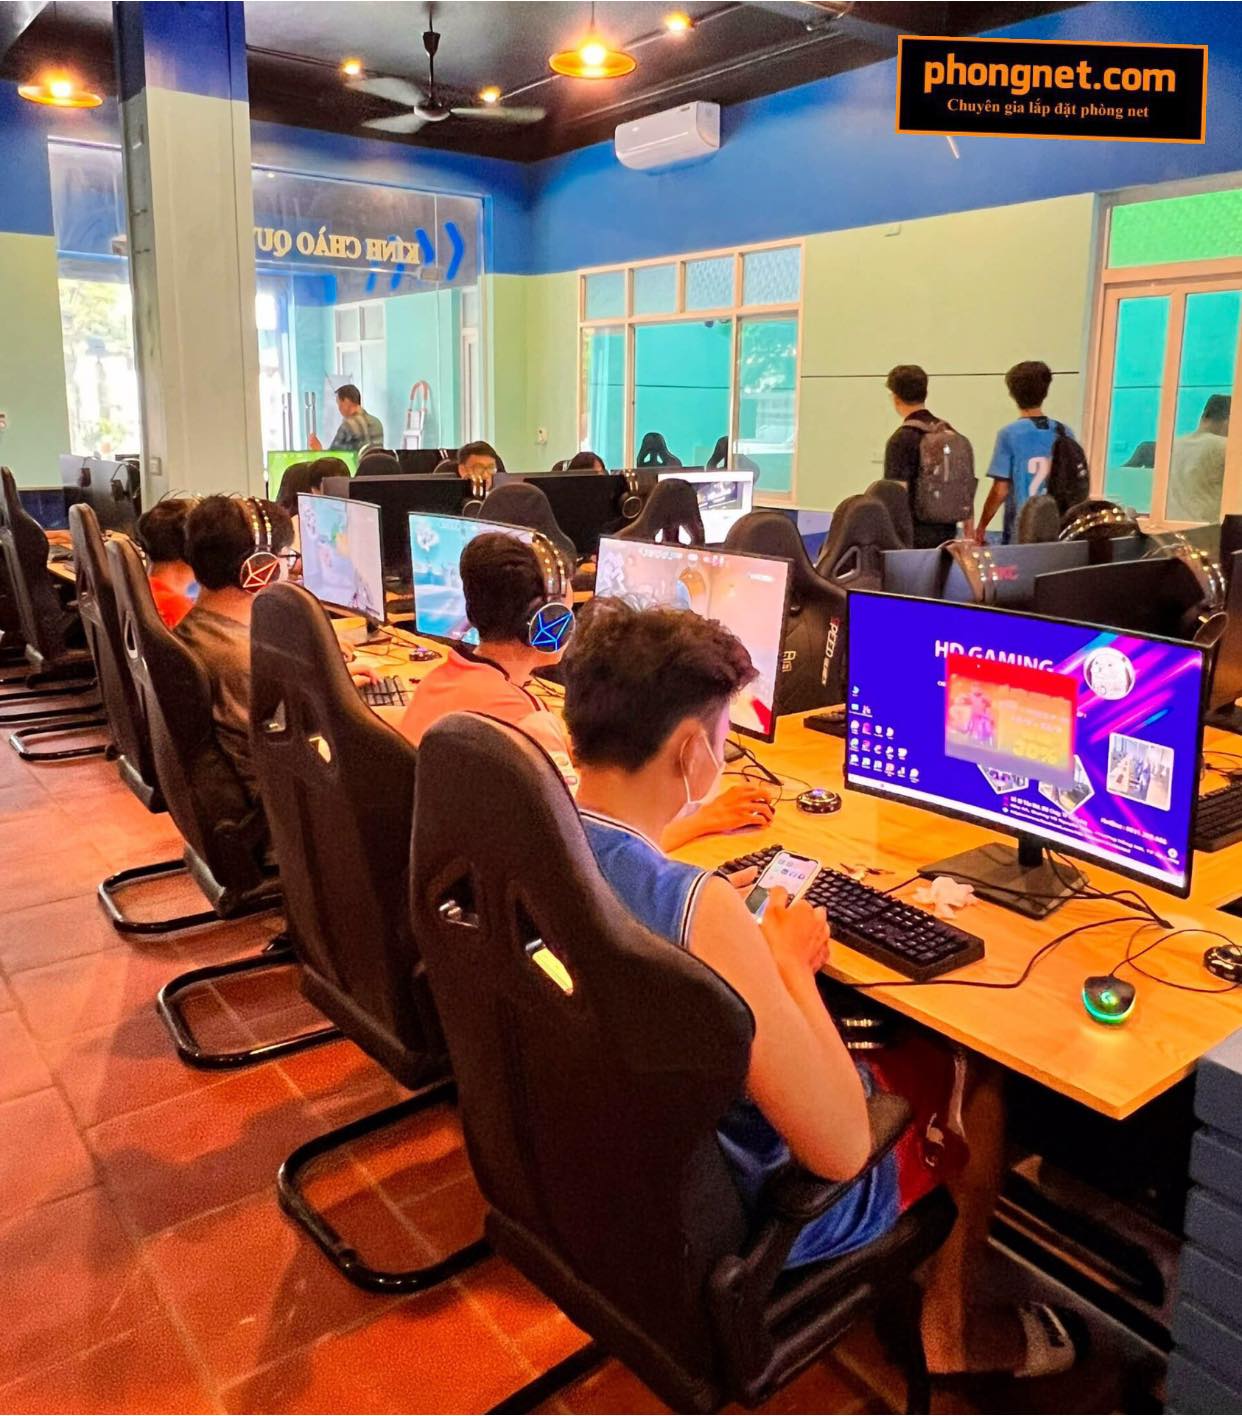 Dự án lắp đặt phòng net HD Gaming tại Cẩm Phả, Quảng Ninh 6